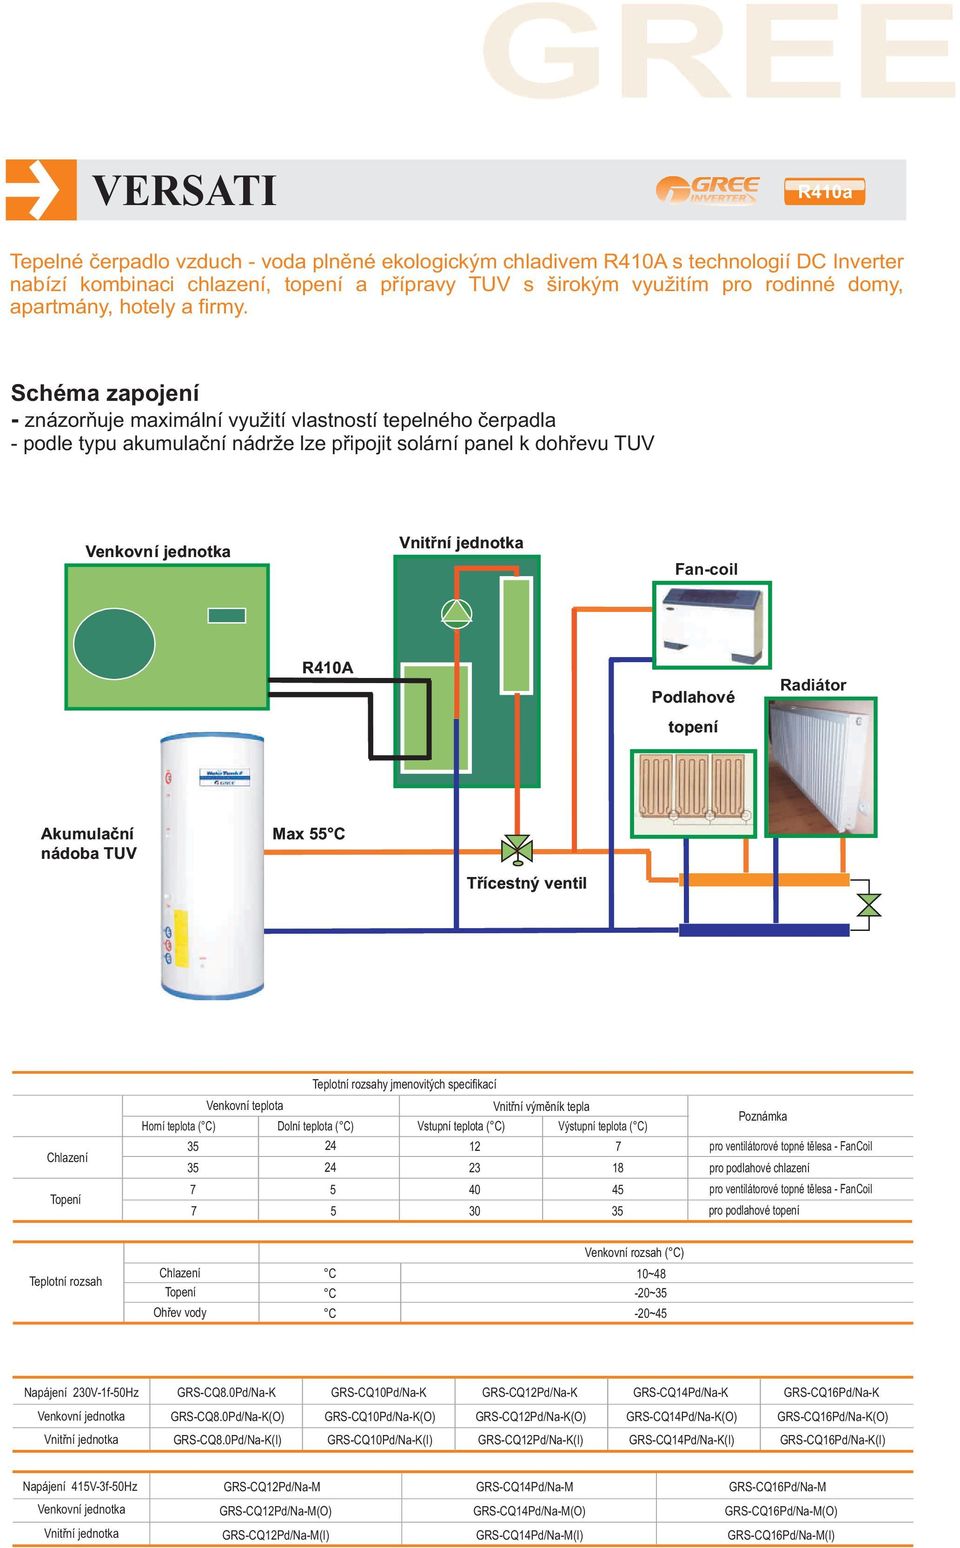 Schéma zapojení znázorňuje maximální využití vlastností tepelného čerpadla podle typu akumulační nádrže lze připojit solární panel k dohřevu TUV Venkovní jednotka Vnitřníní jednotka Fancoil R4A